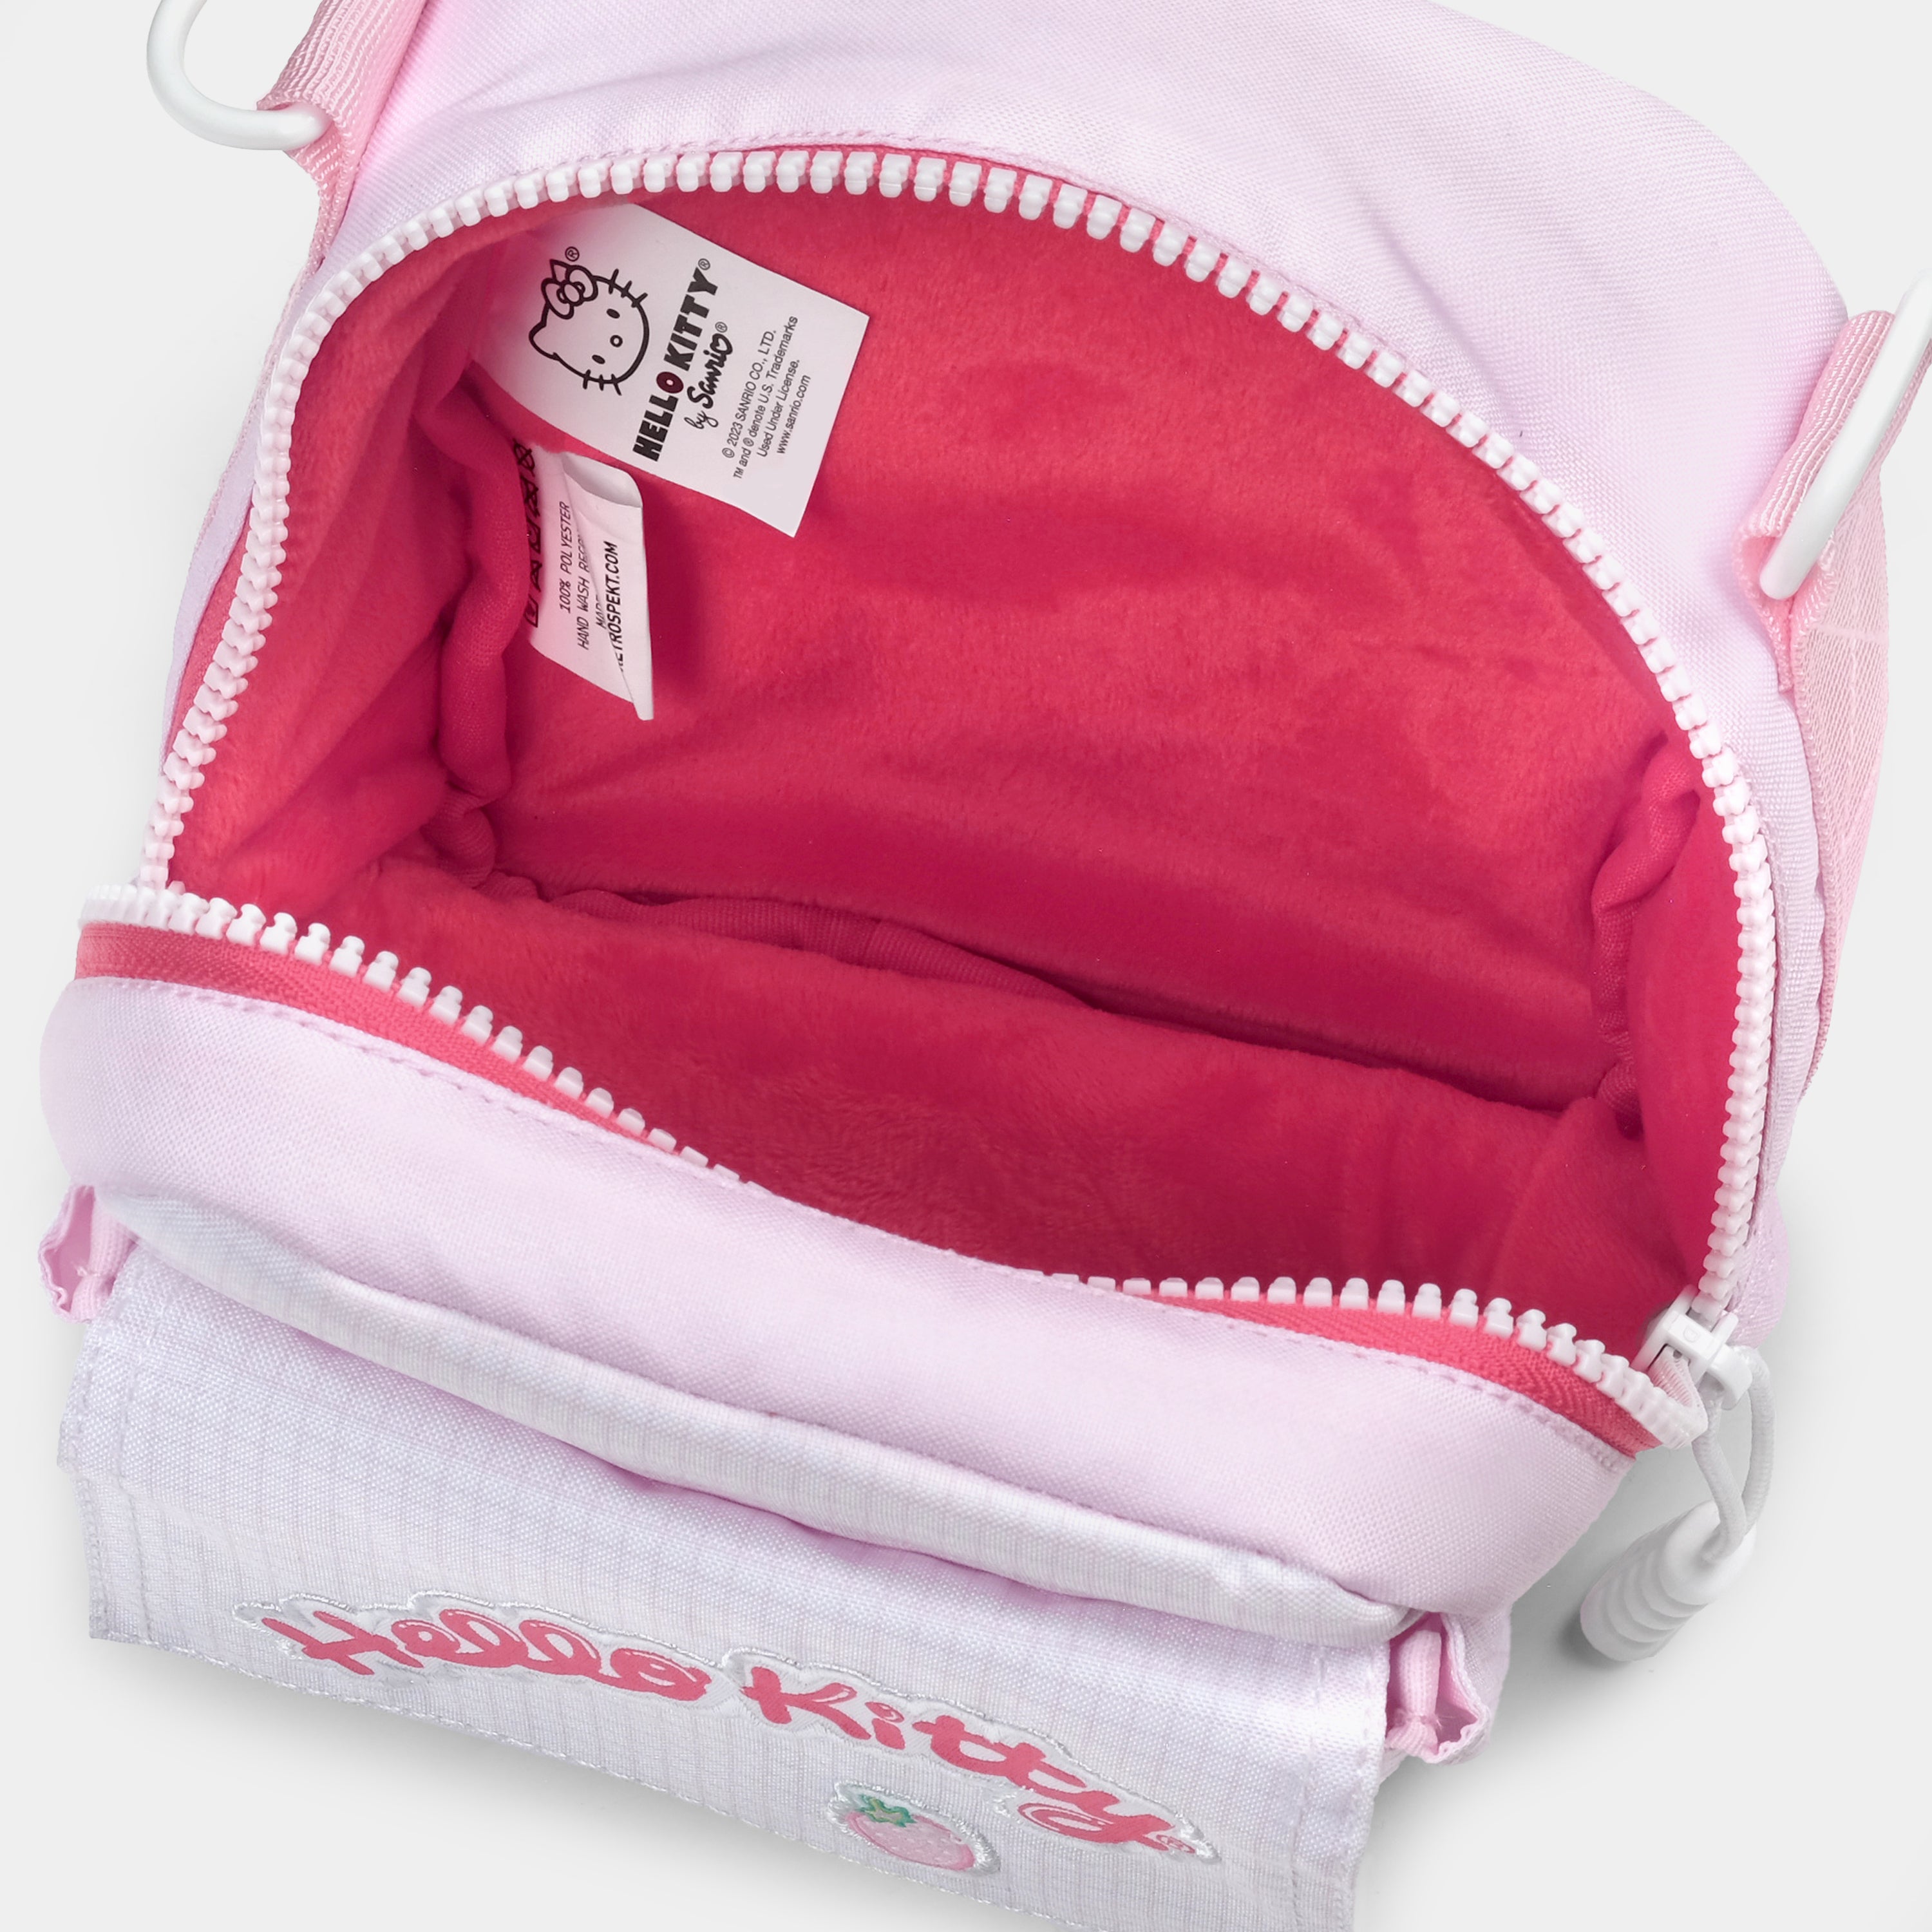 Hello Kitty Strawberry Kawaii 600 Instant Camera Bag